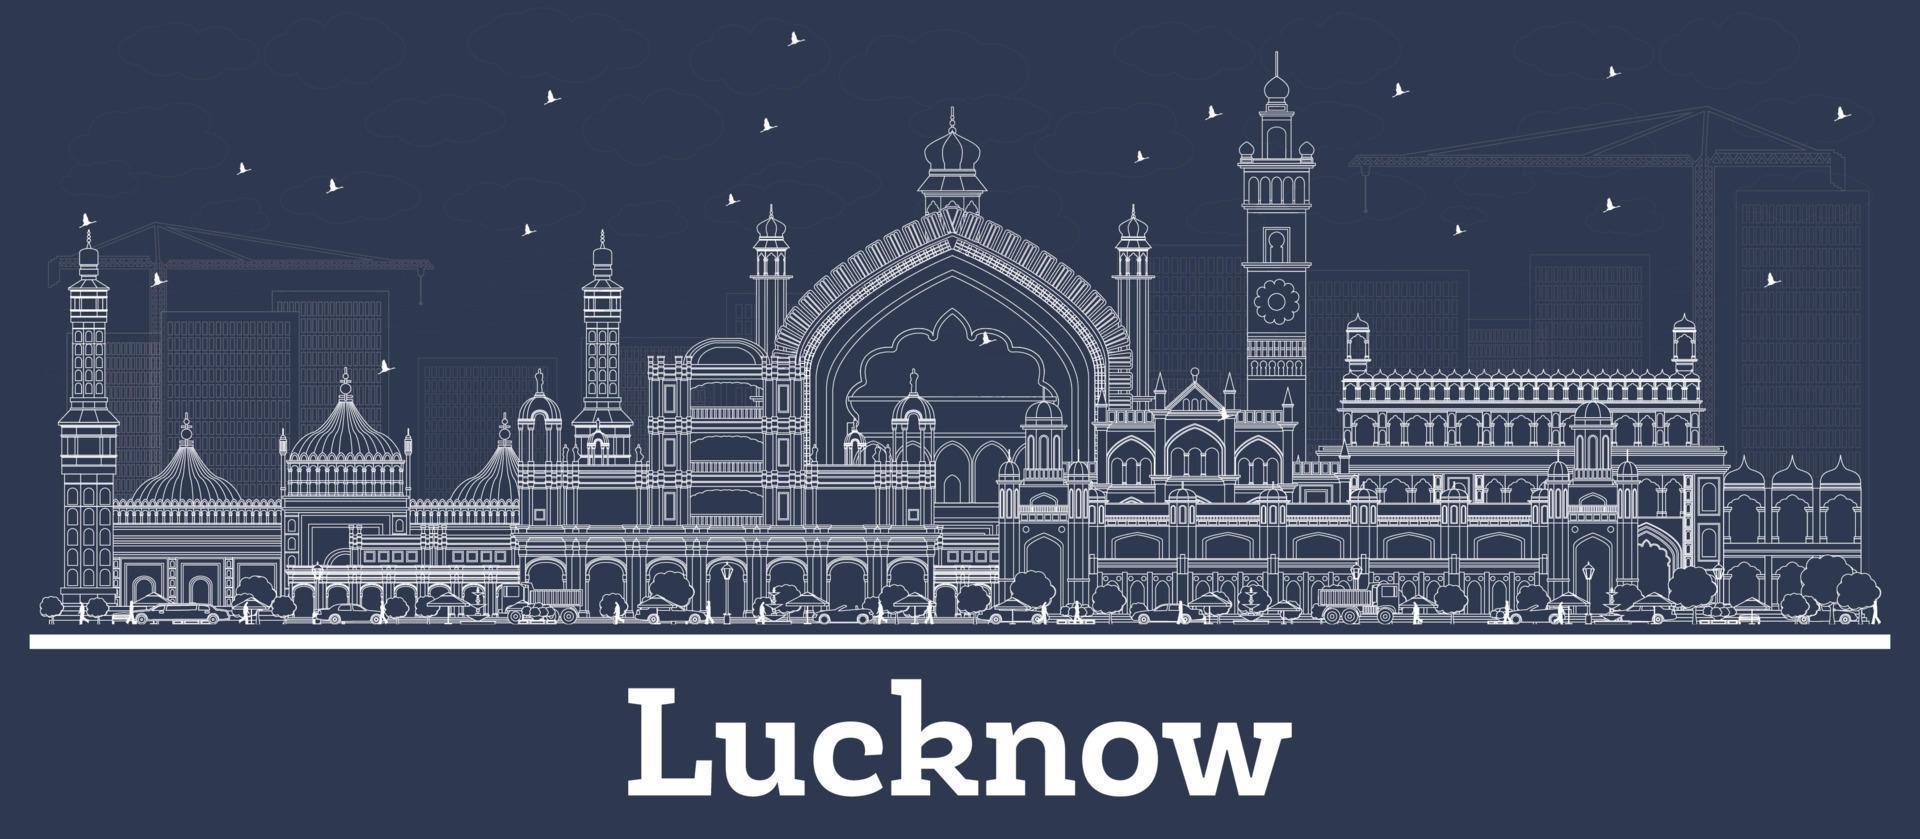 Décrire l'horizon de la ville de luckynow en Inde avec des bâtiments blancs. vecteur